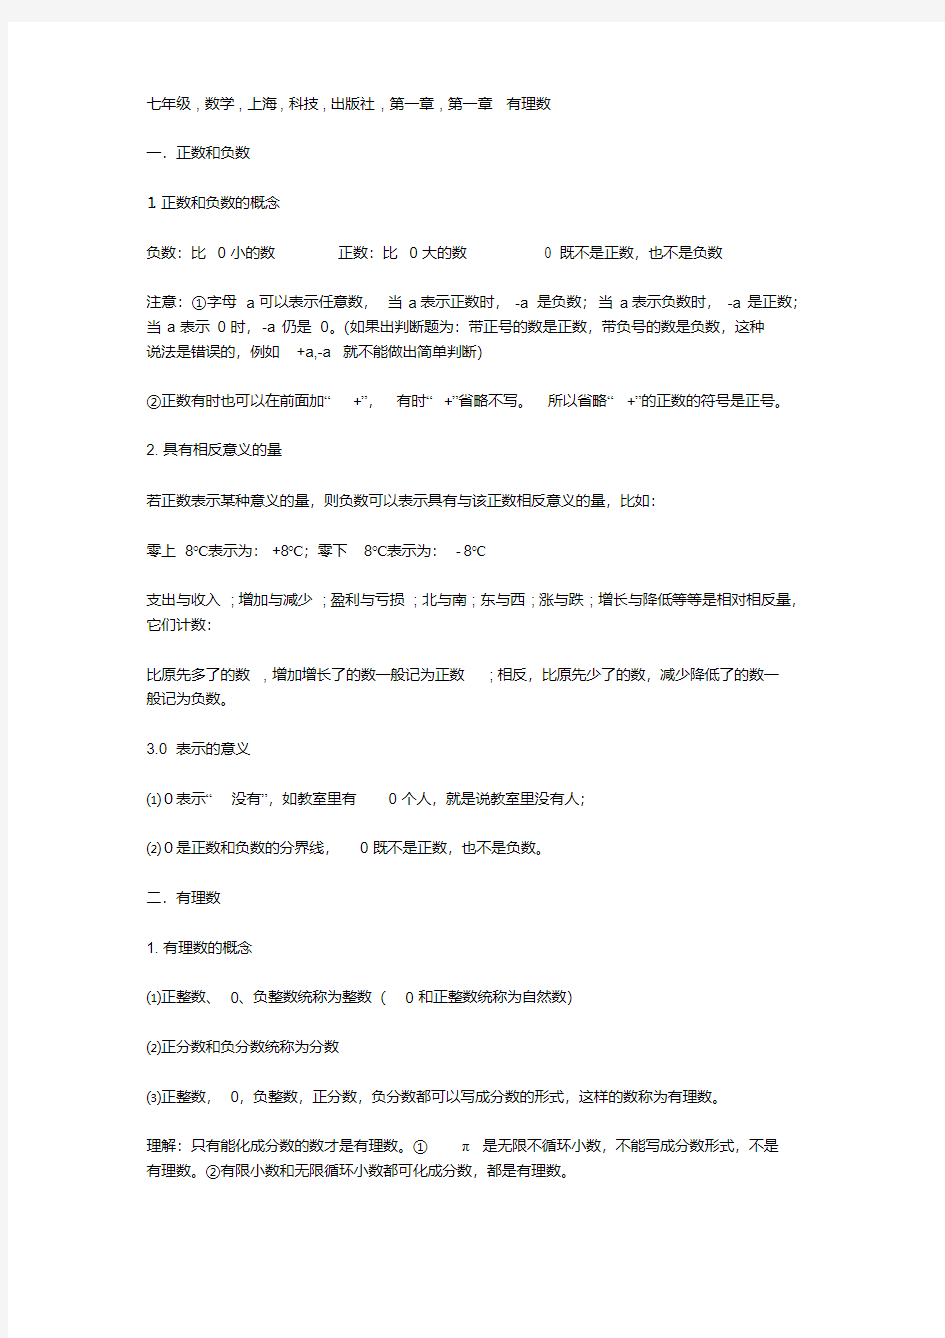 七年级数学,上海科技出版社.pdf